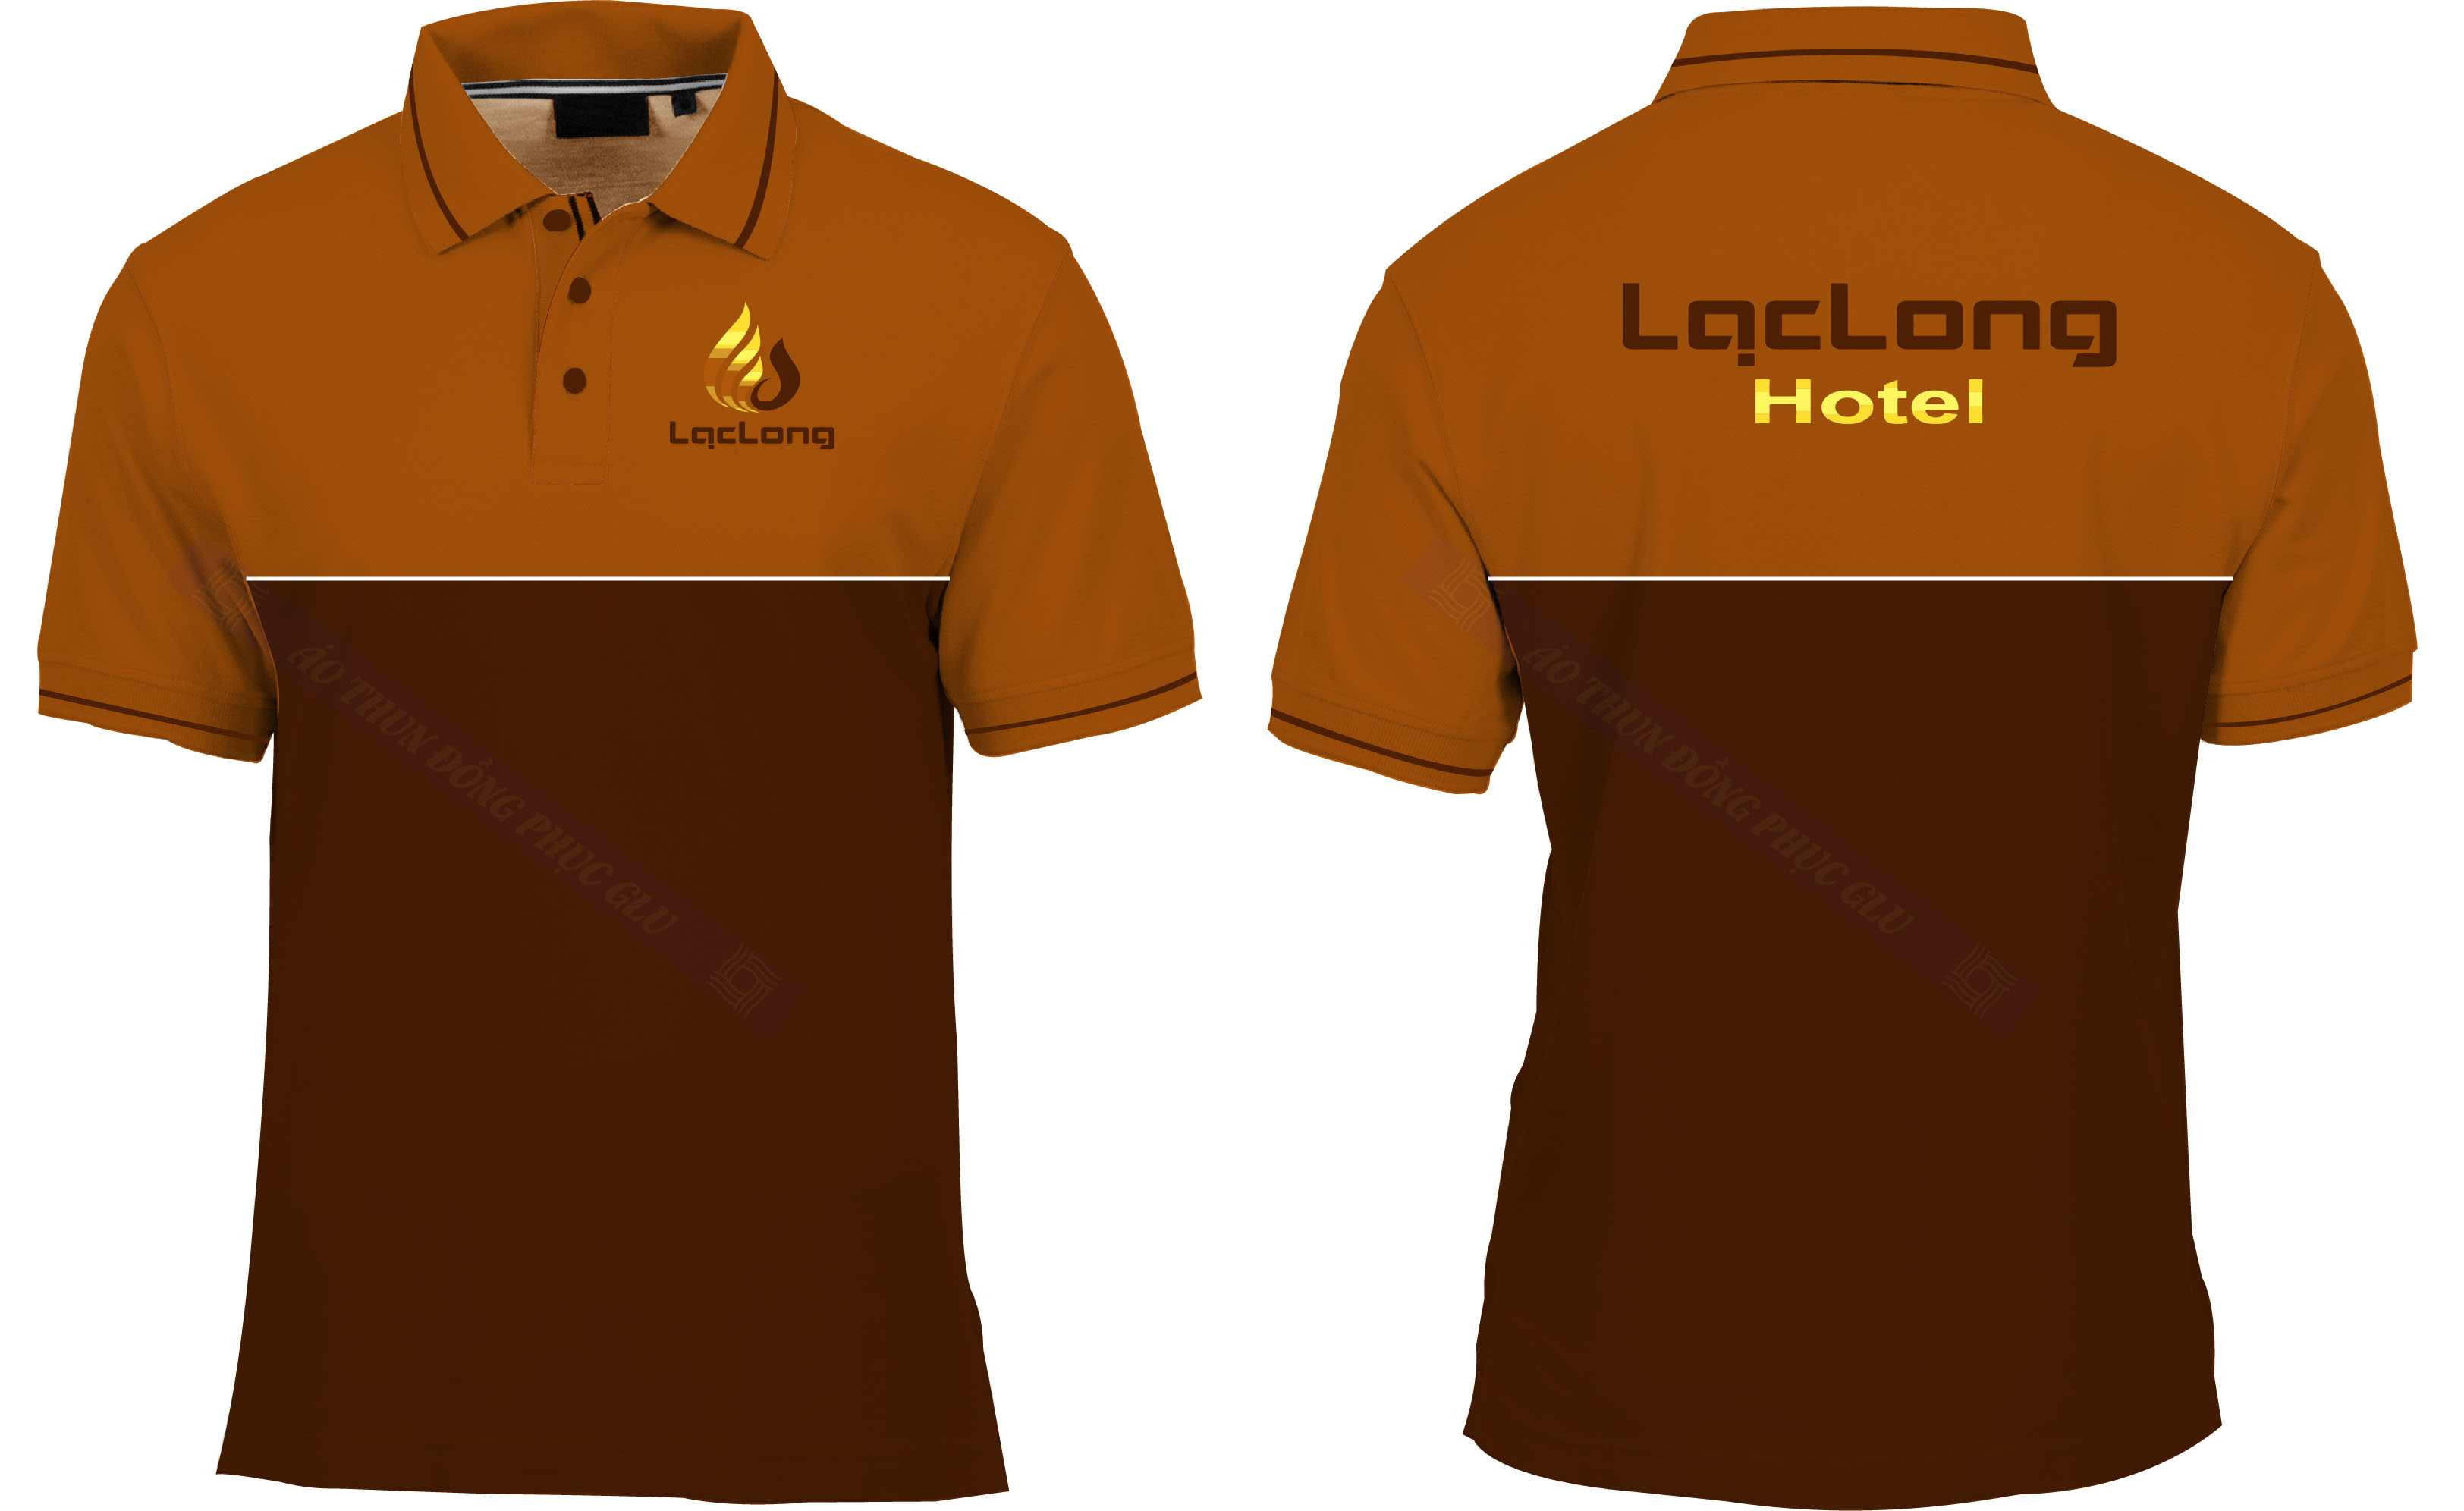 AO THUN LAC LONG HOTEL Mẫu thiết kế áo đồng phục